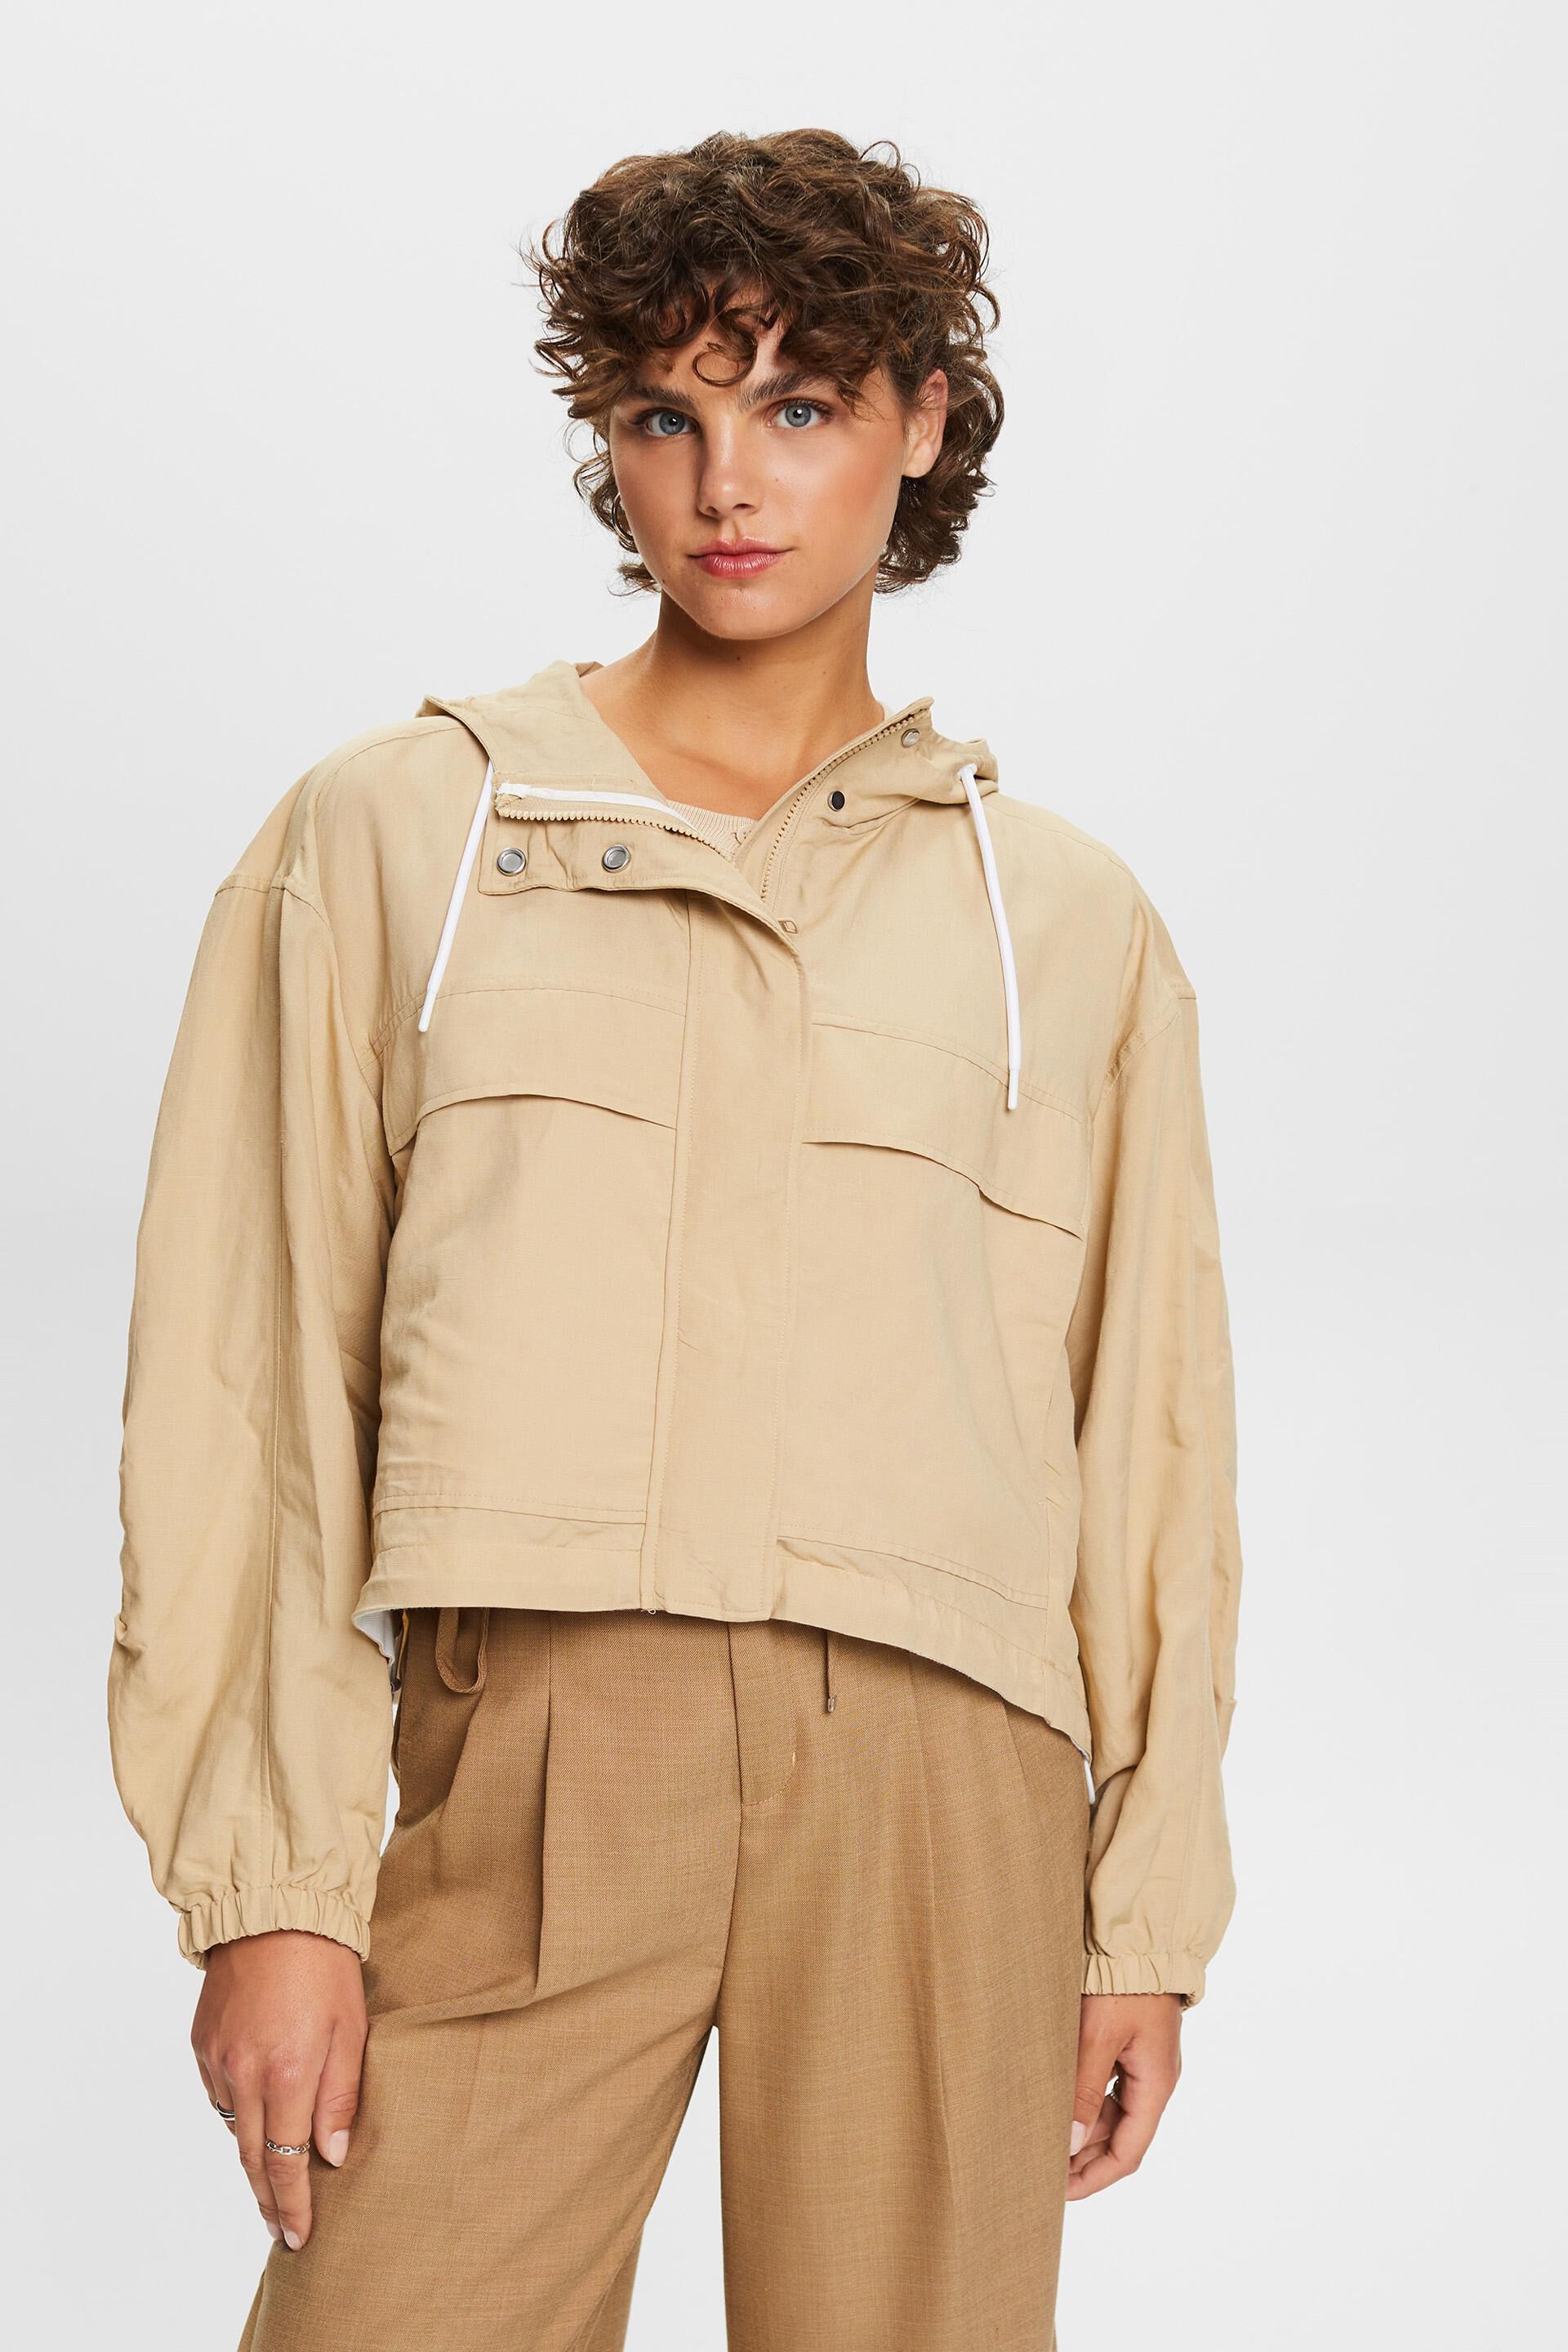 Esprit blend linen with jacket hood, Transitional a